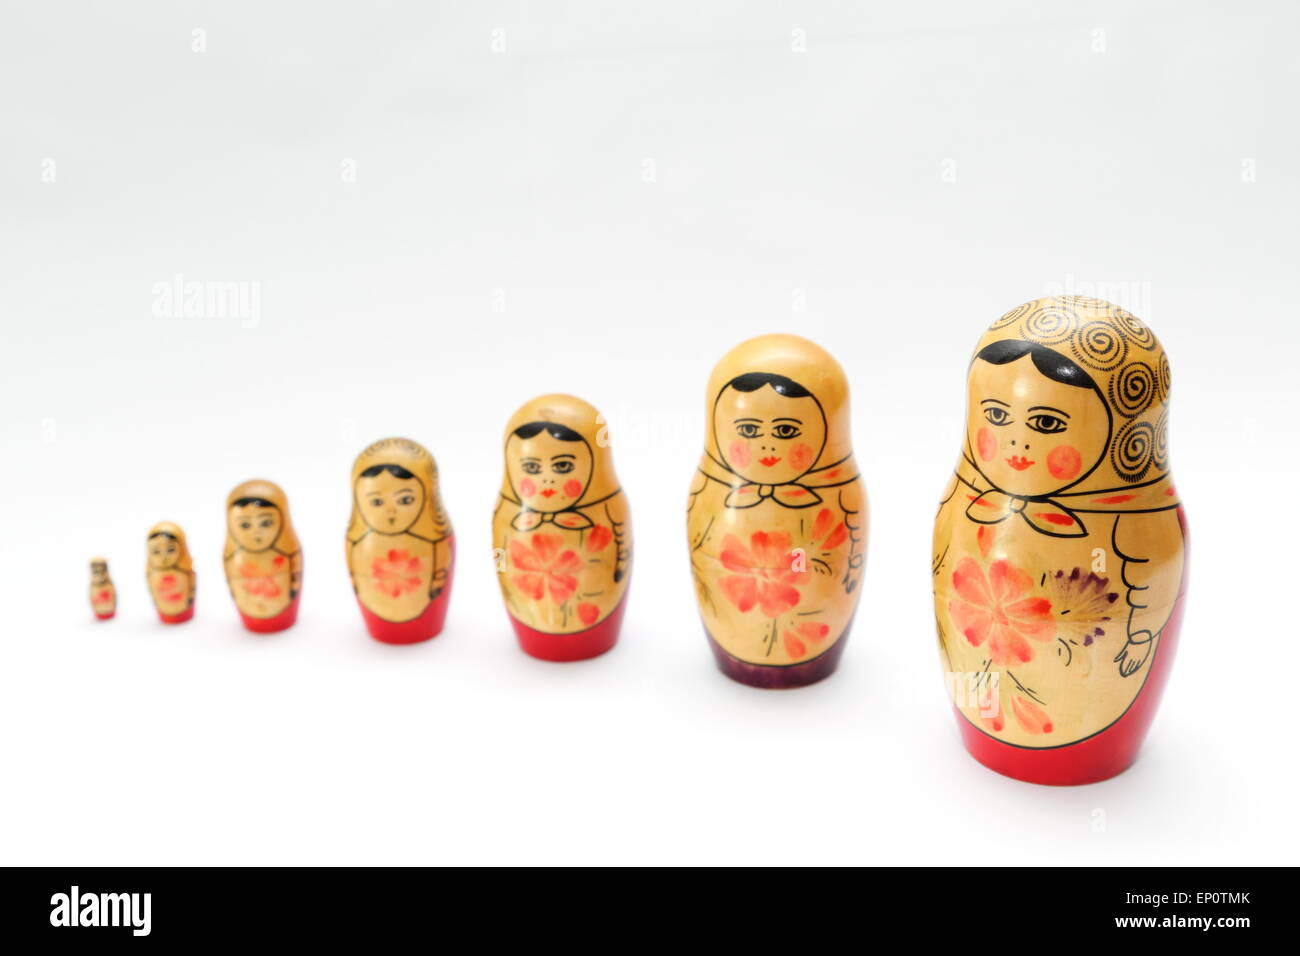 Russische Puppe, bezieht sich auf eine Reihe von Holzpuppen abnehmender Größe ineinander gelegt. Stockfoto